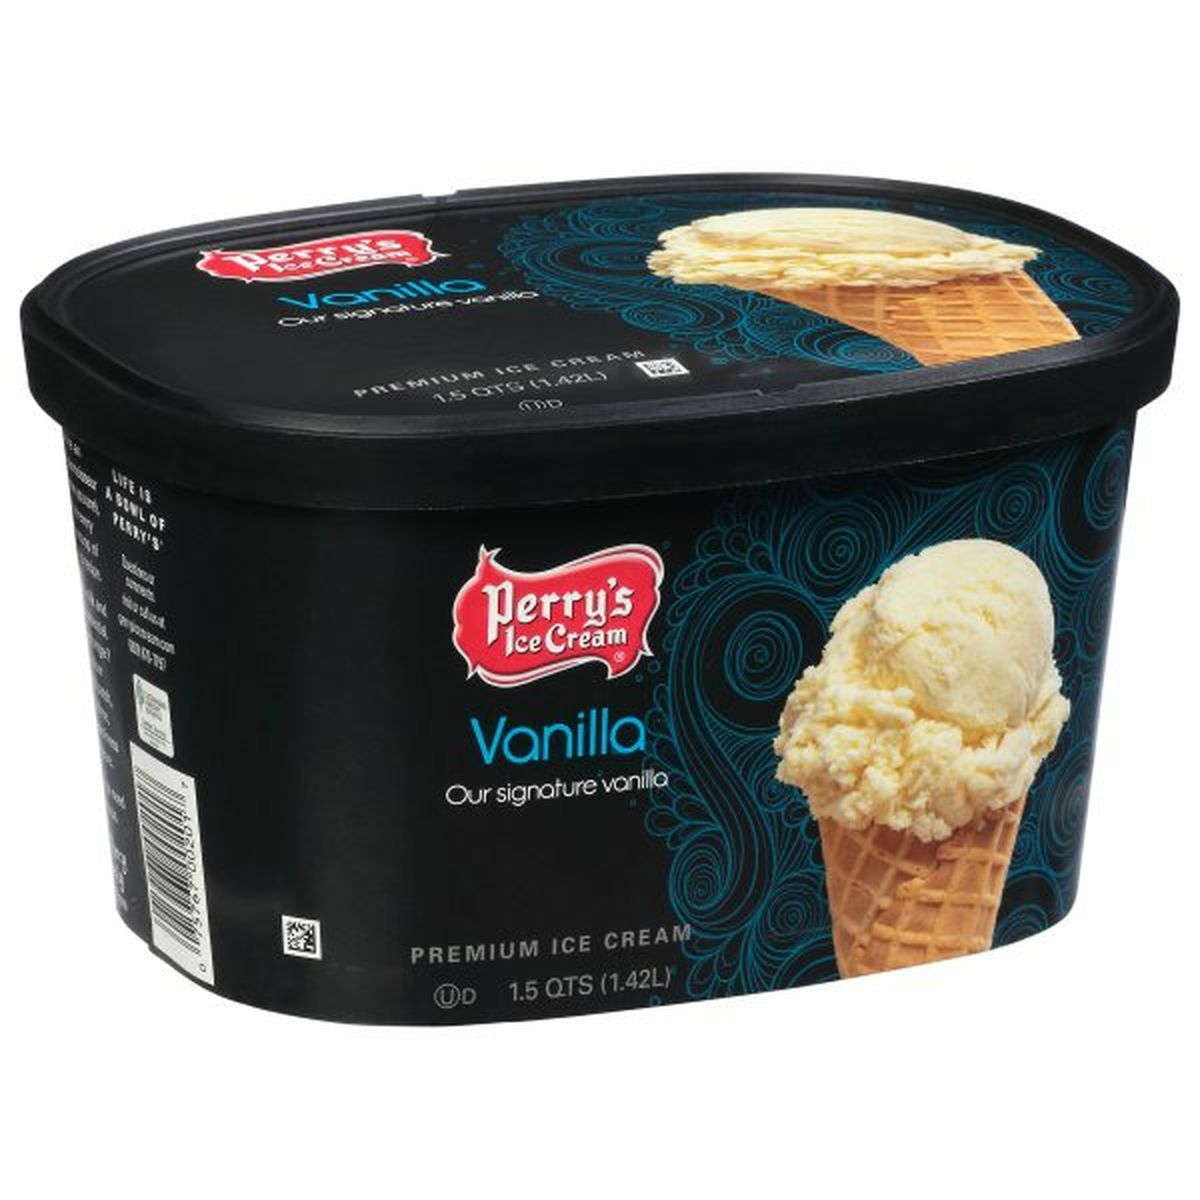 Calories in Perry's Ice Cream Premium, Vanilla